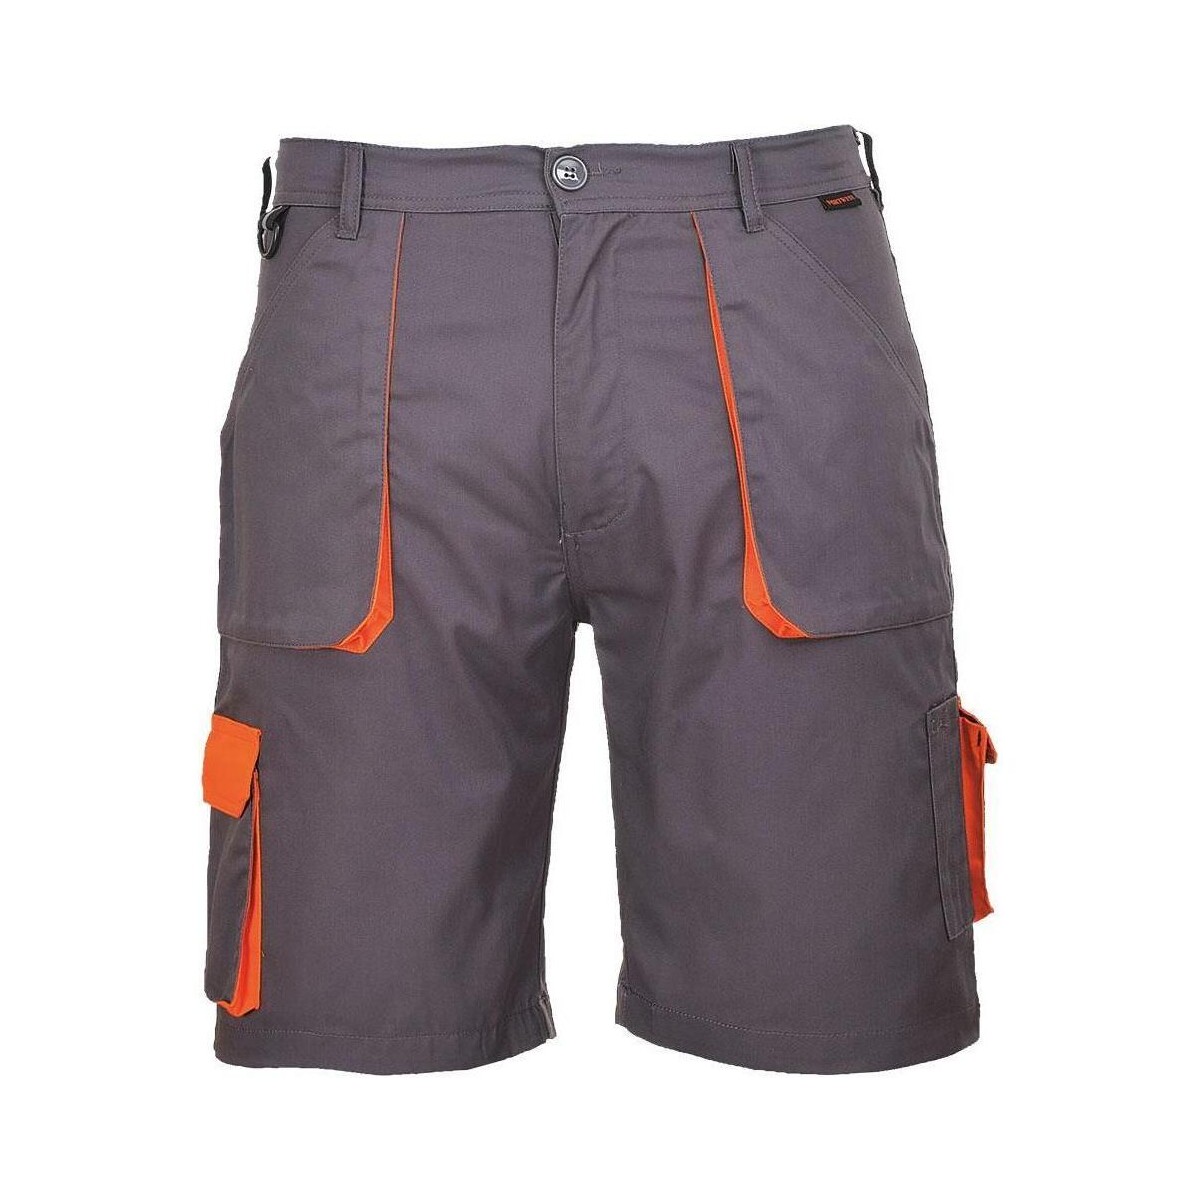 Abbigliamento Uomo Shorts / Bermuda Portwest Texo Grigio